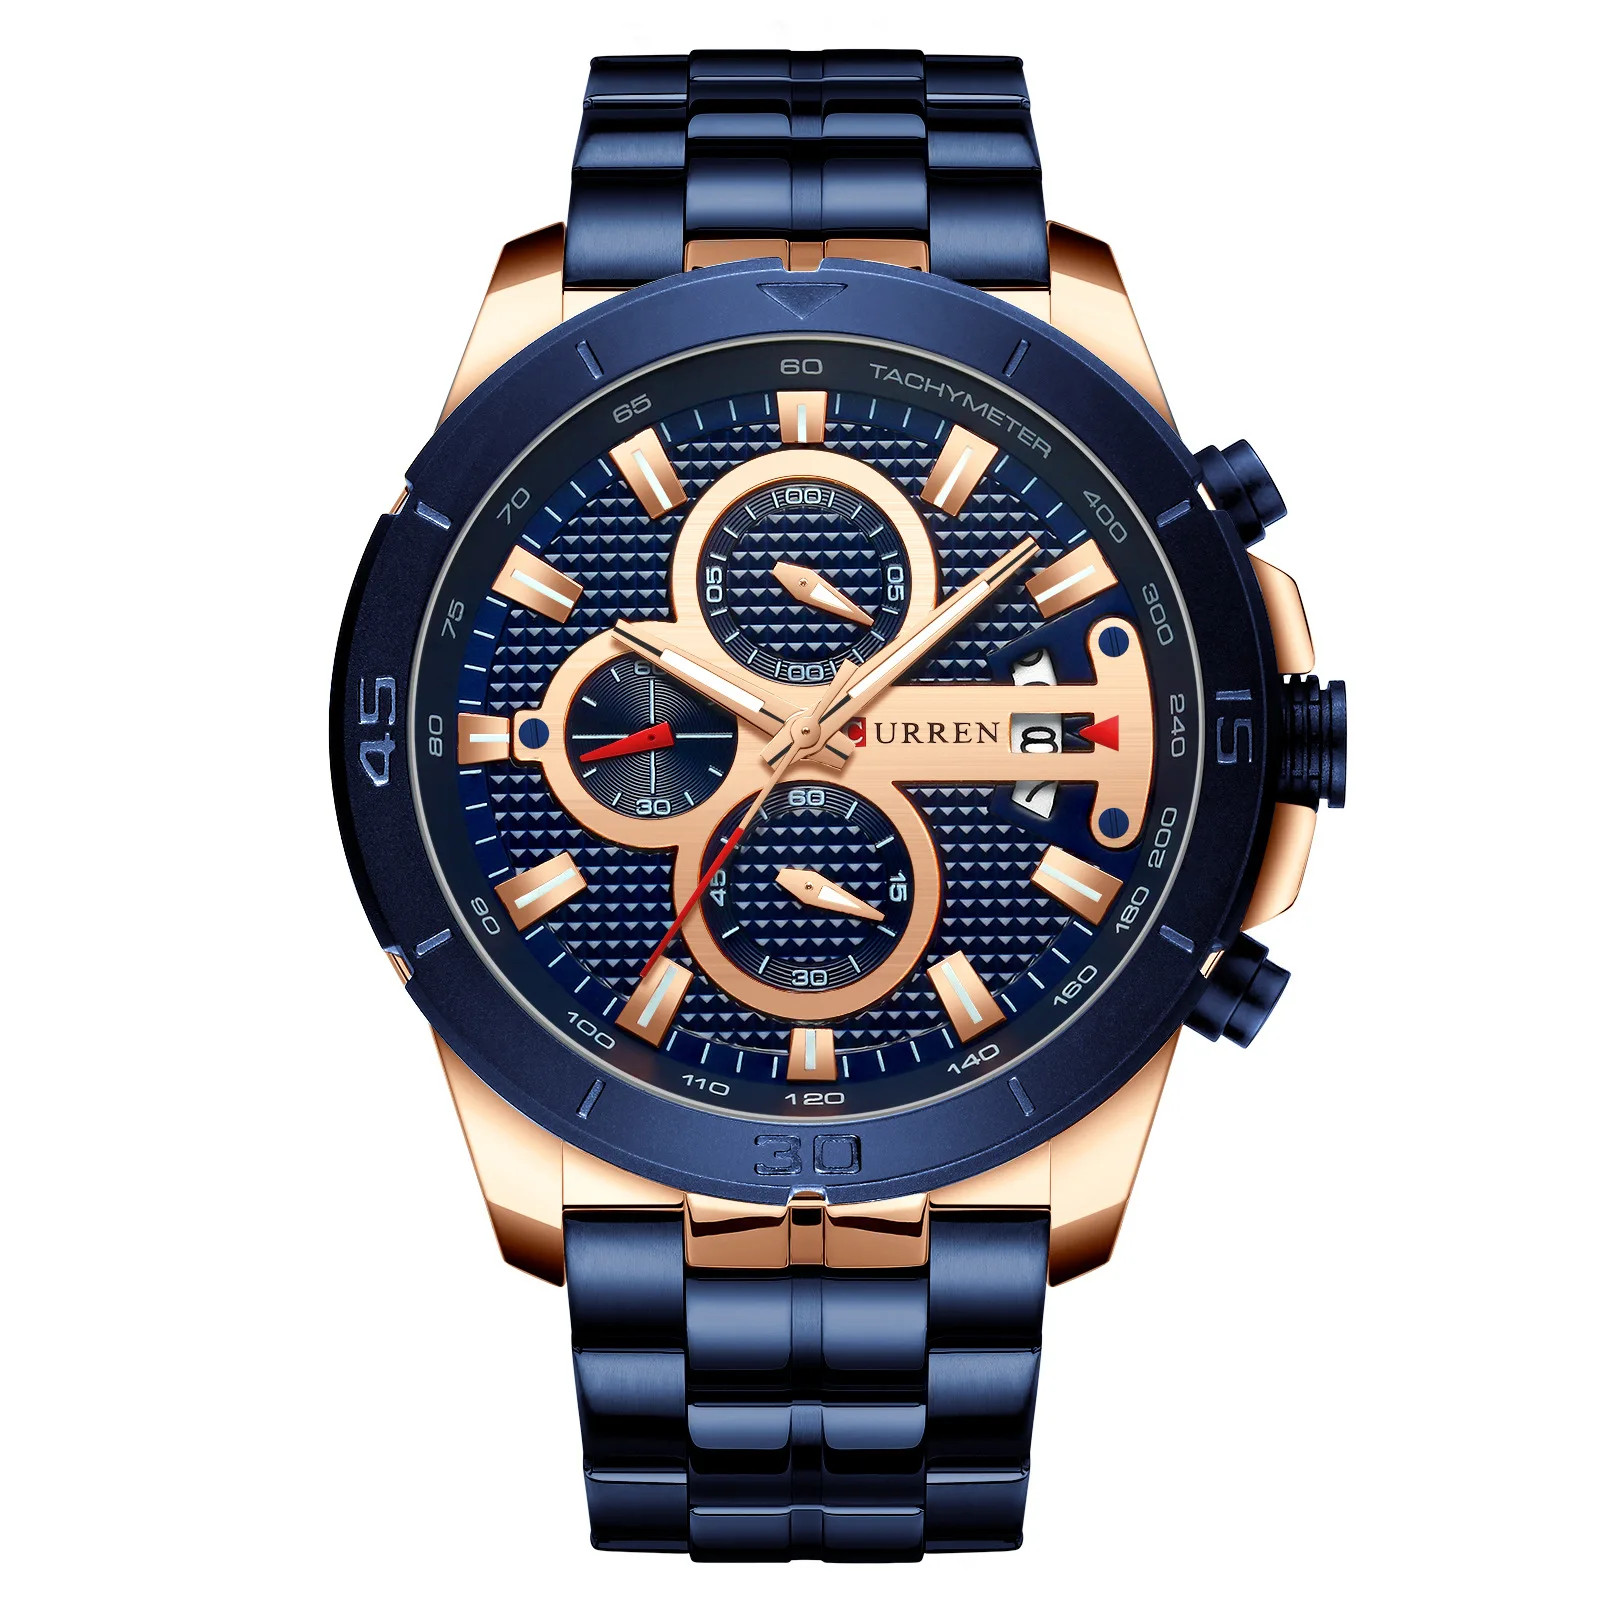 

Мужские часы Curren/ Karin, новинка 8337, многофункциональные кварцевые часы с шестью контактами, мужские часы с календарем и стальным ремешком.